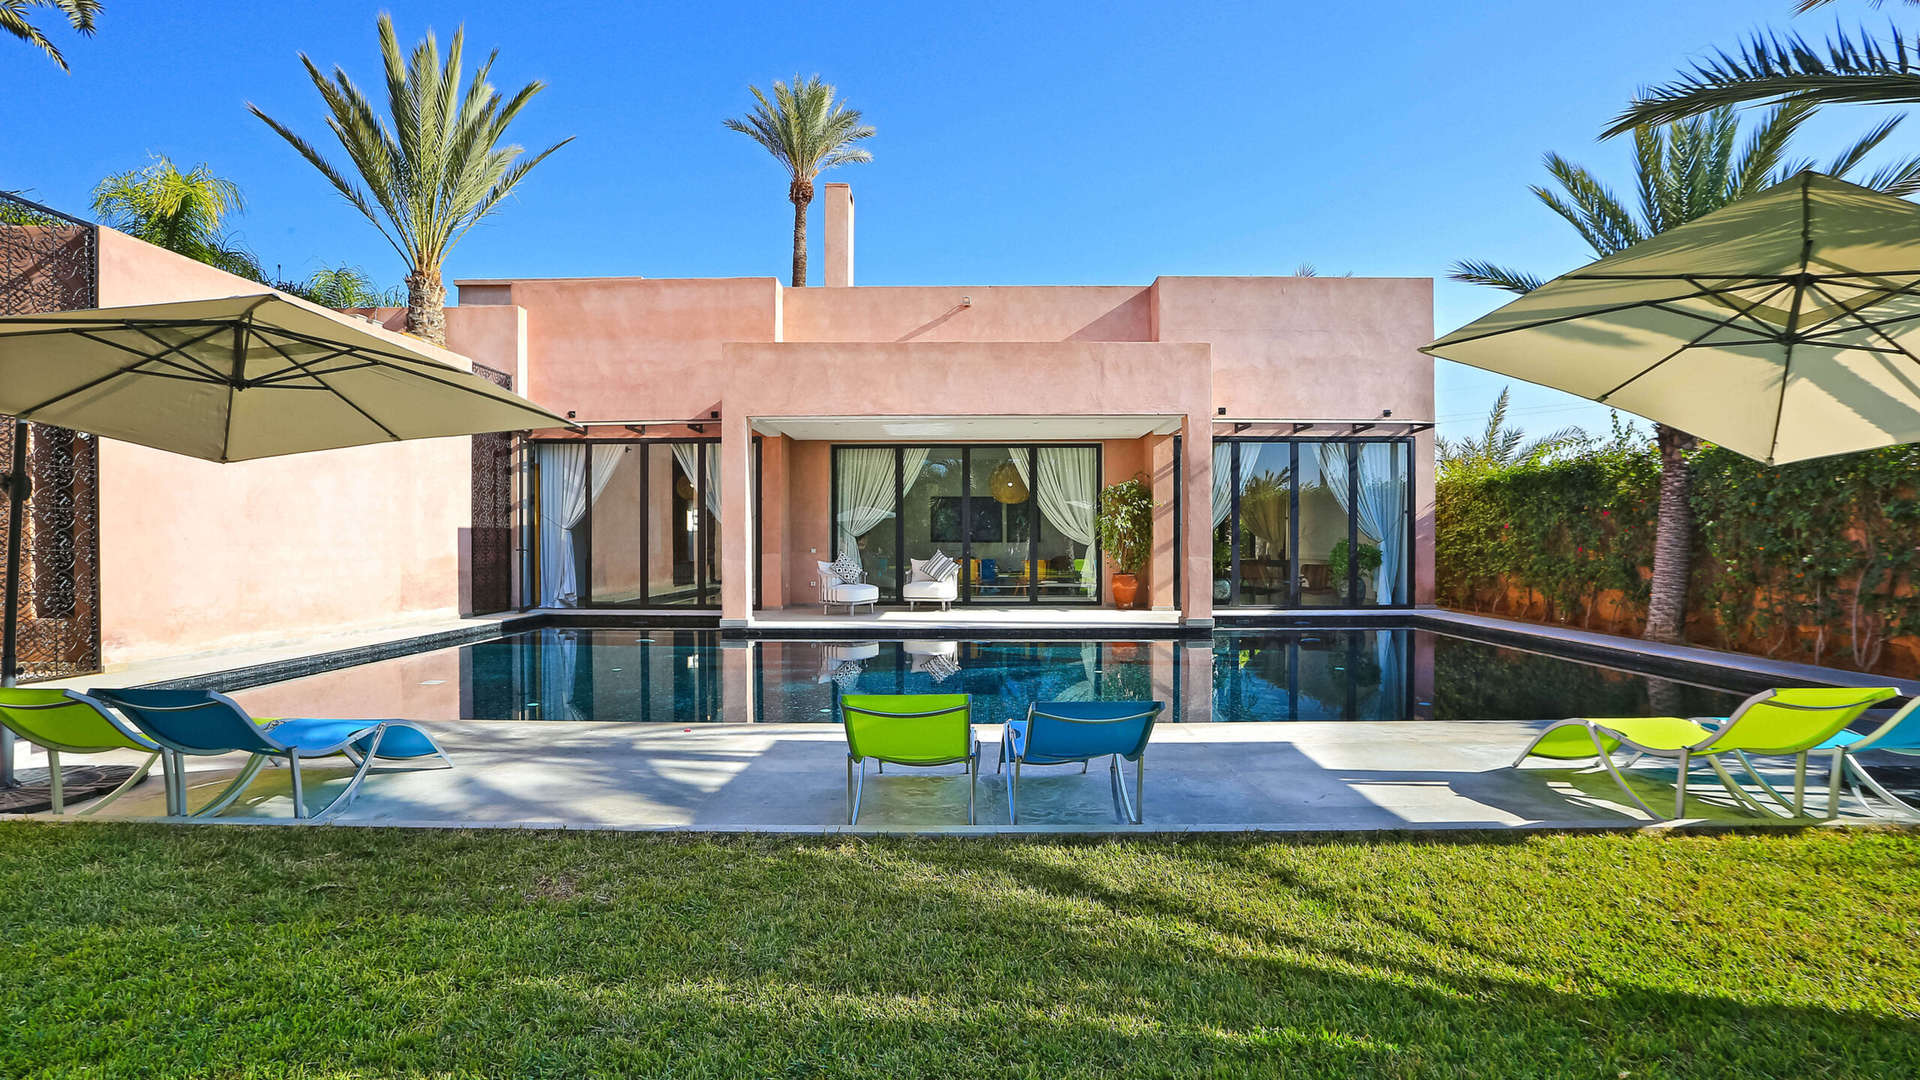 Location de vacances,Villa,Villa contemporaine privée pour 10 personnes située dans la palmeraie de Marrakech,Marrakech,Palmeraie